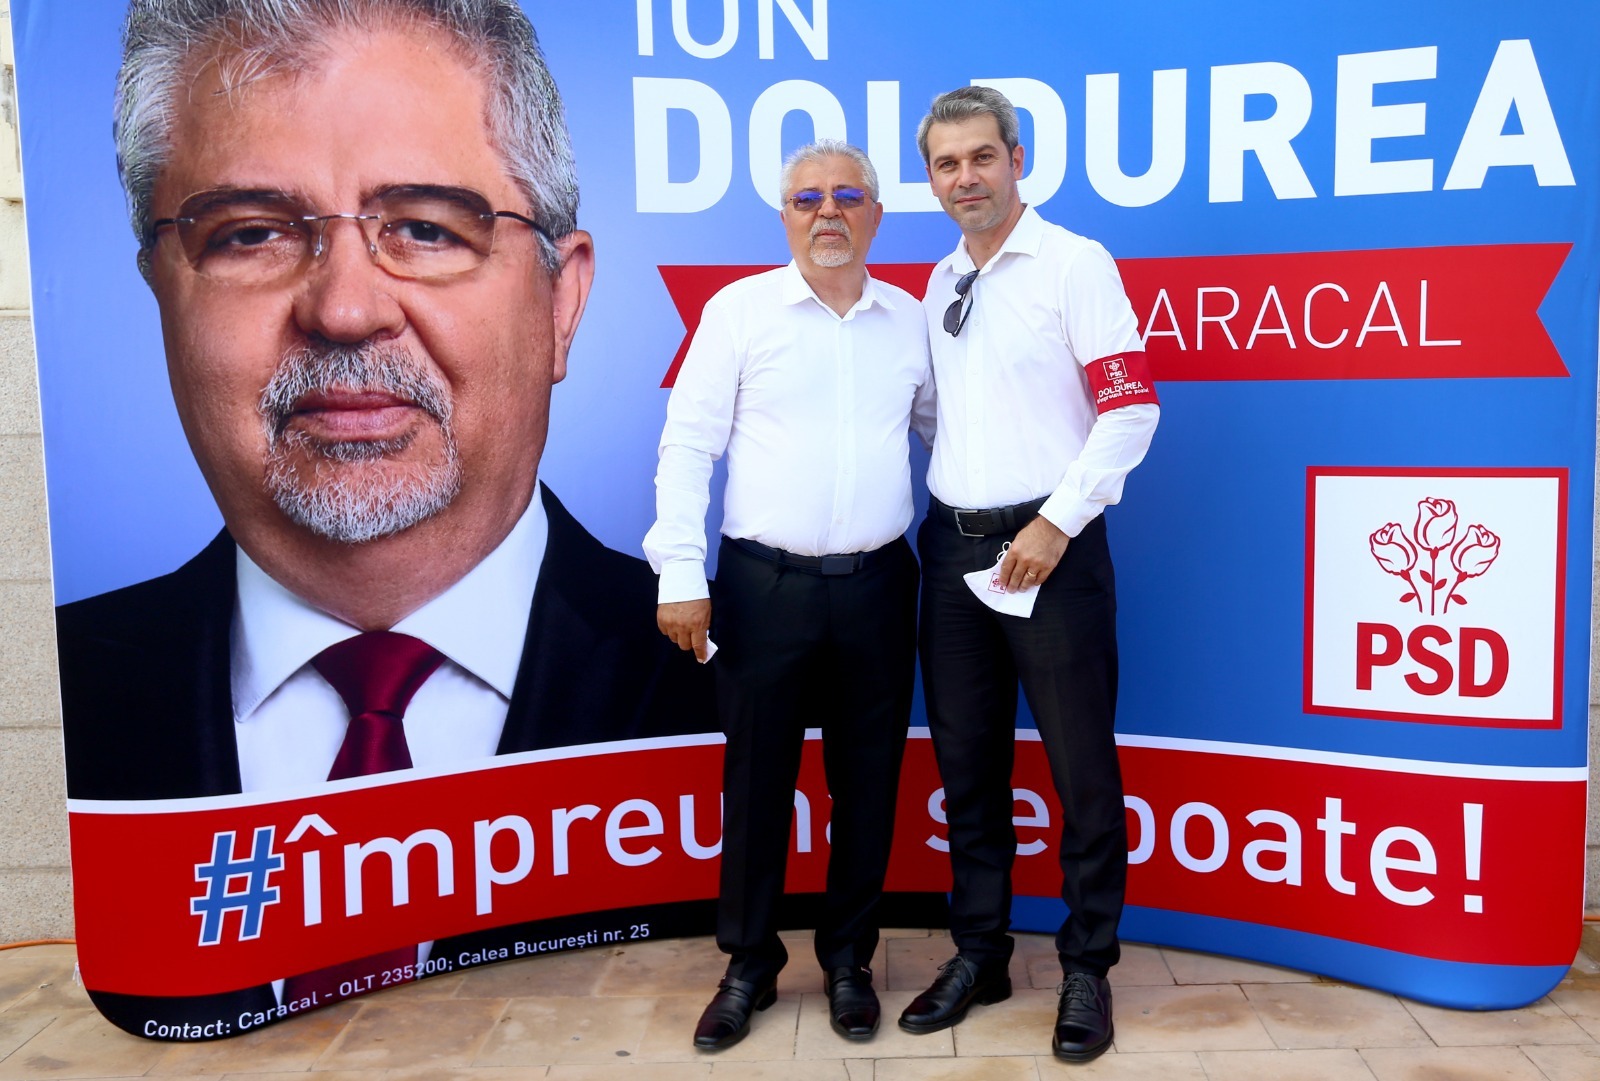 Şerban Cernat, secretar-executiv PSD Caracal: “Niciun vot nu se poate numi „democratic“ dacă se produce pe bază de ură”